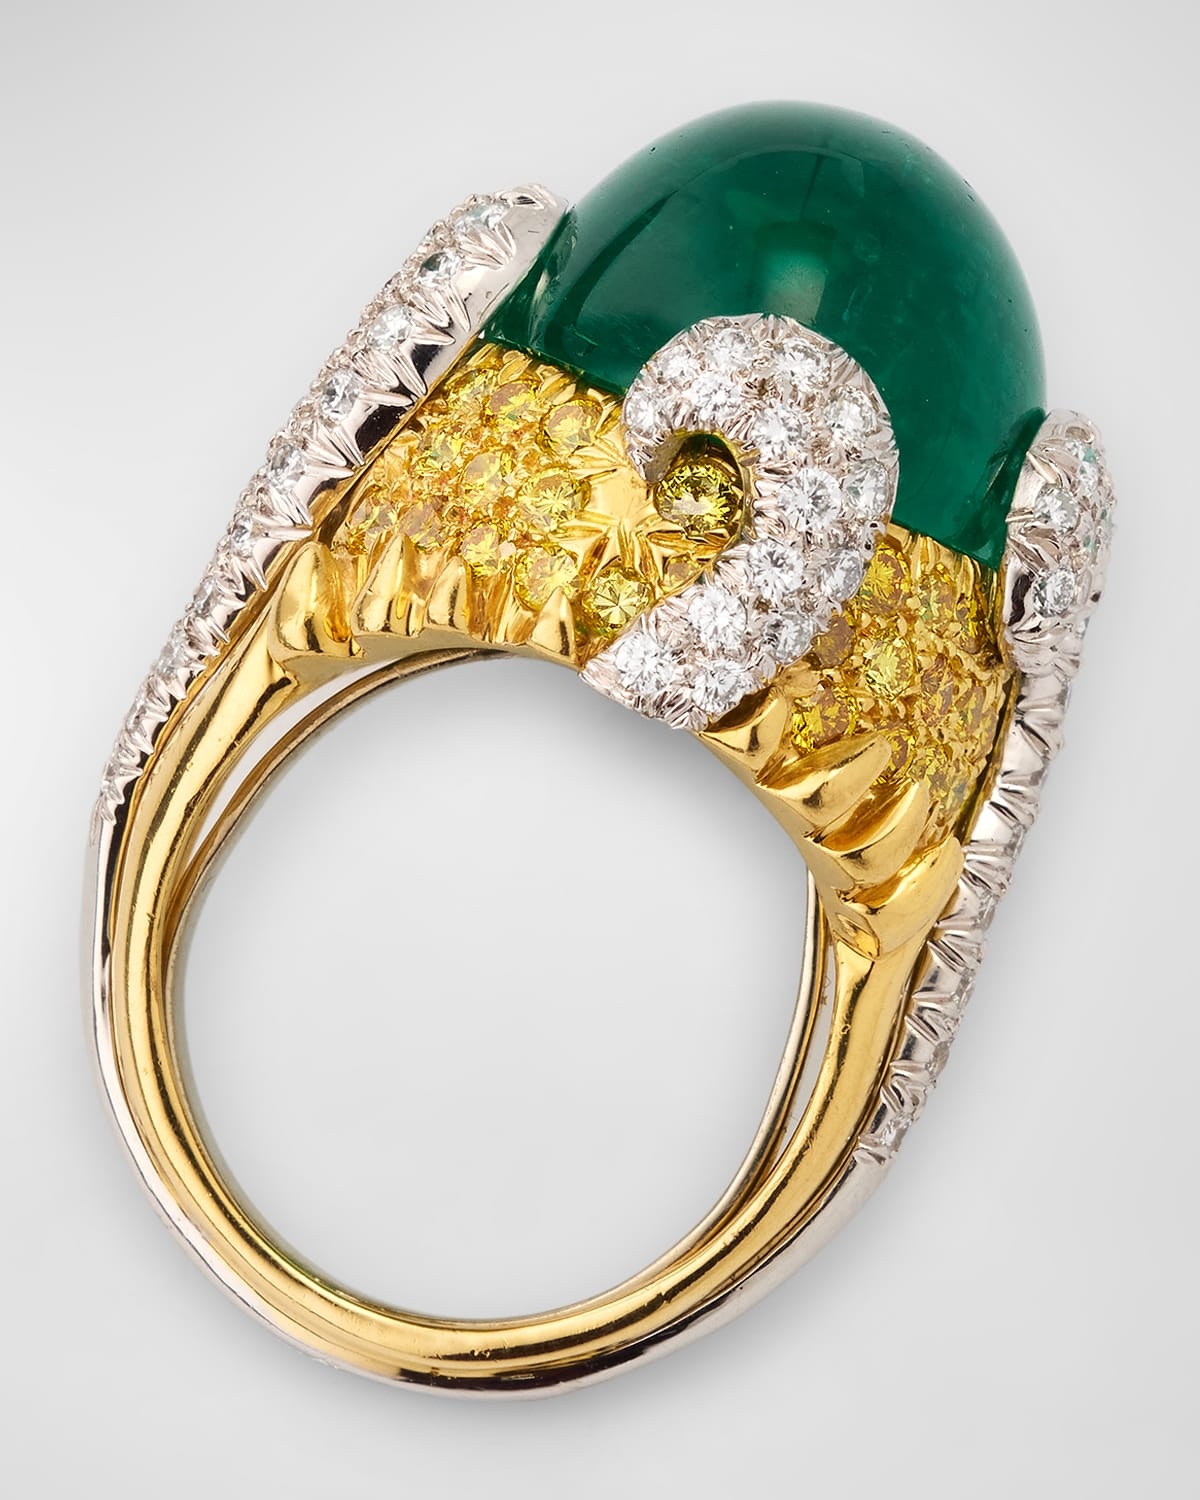 18K Yellow Gold and Platinum Emerald, Yellow Diamond and White Diamond Ring - 6